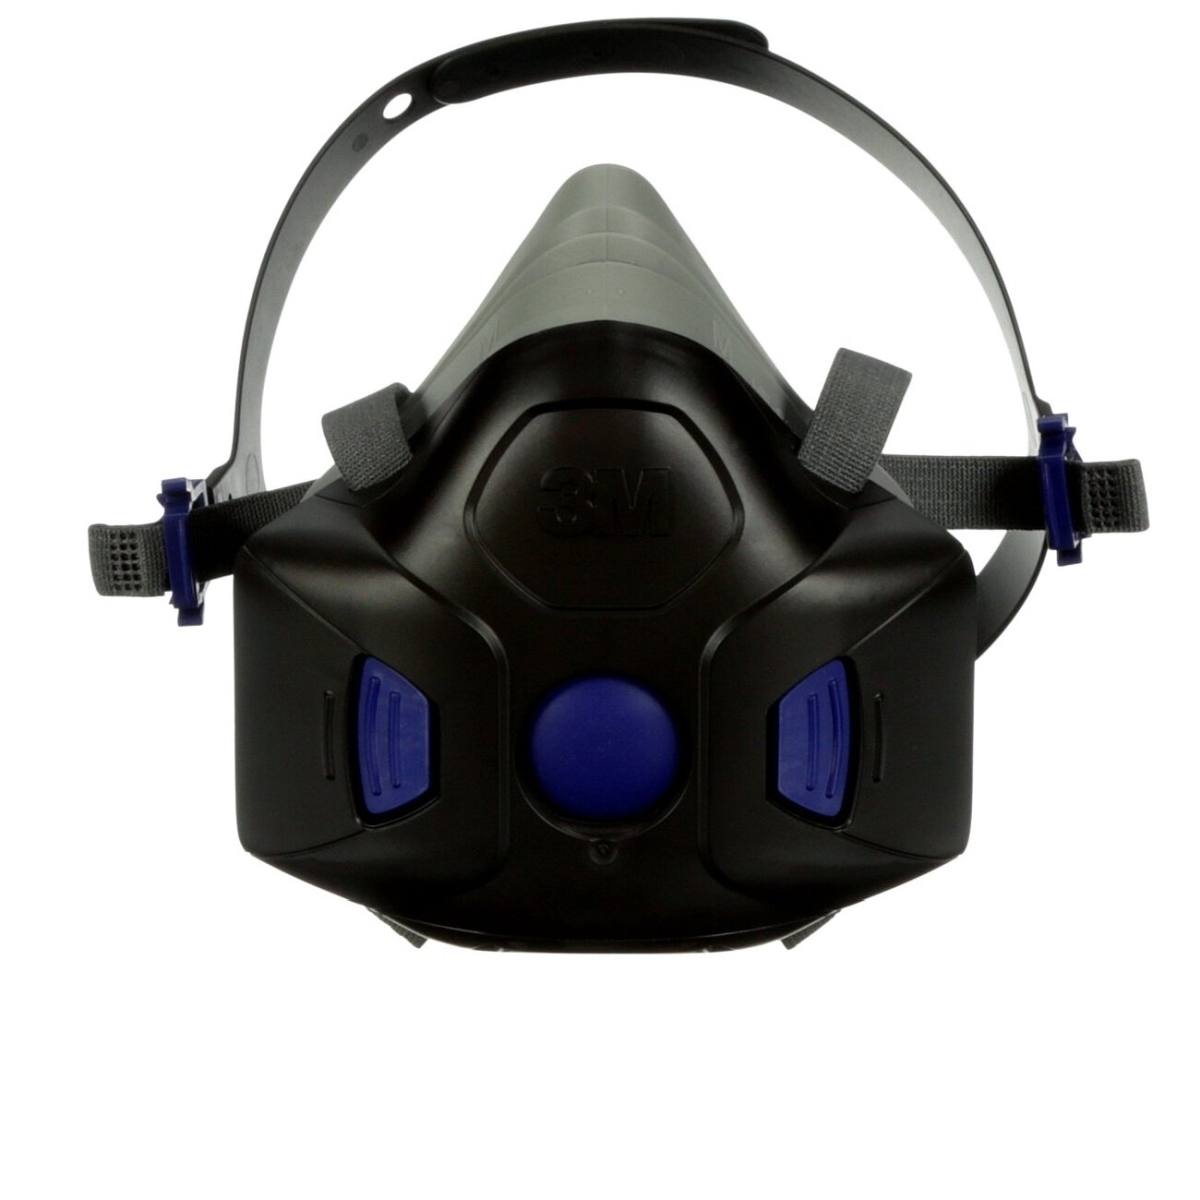 3M Secure Click media máscara HF-801 silicona talla S